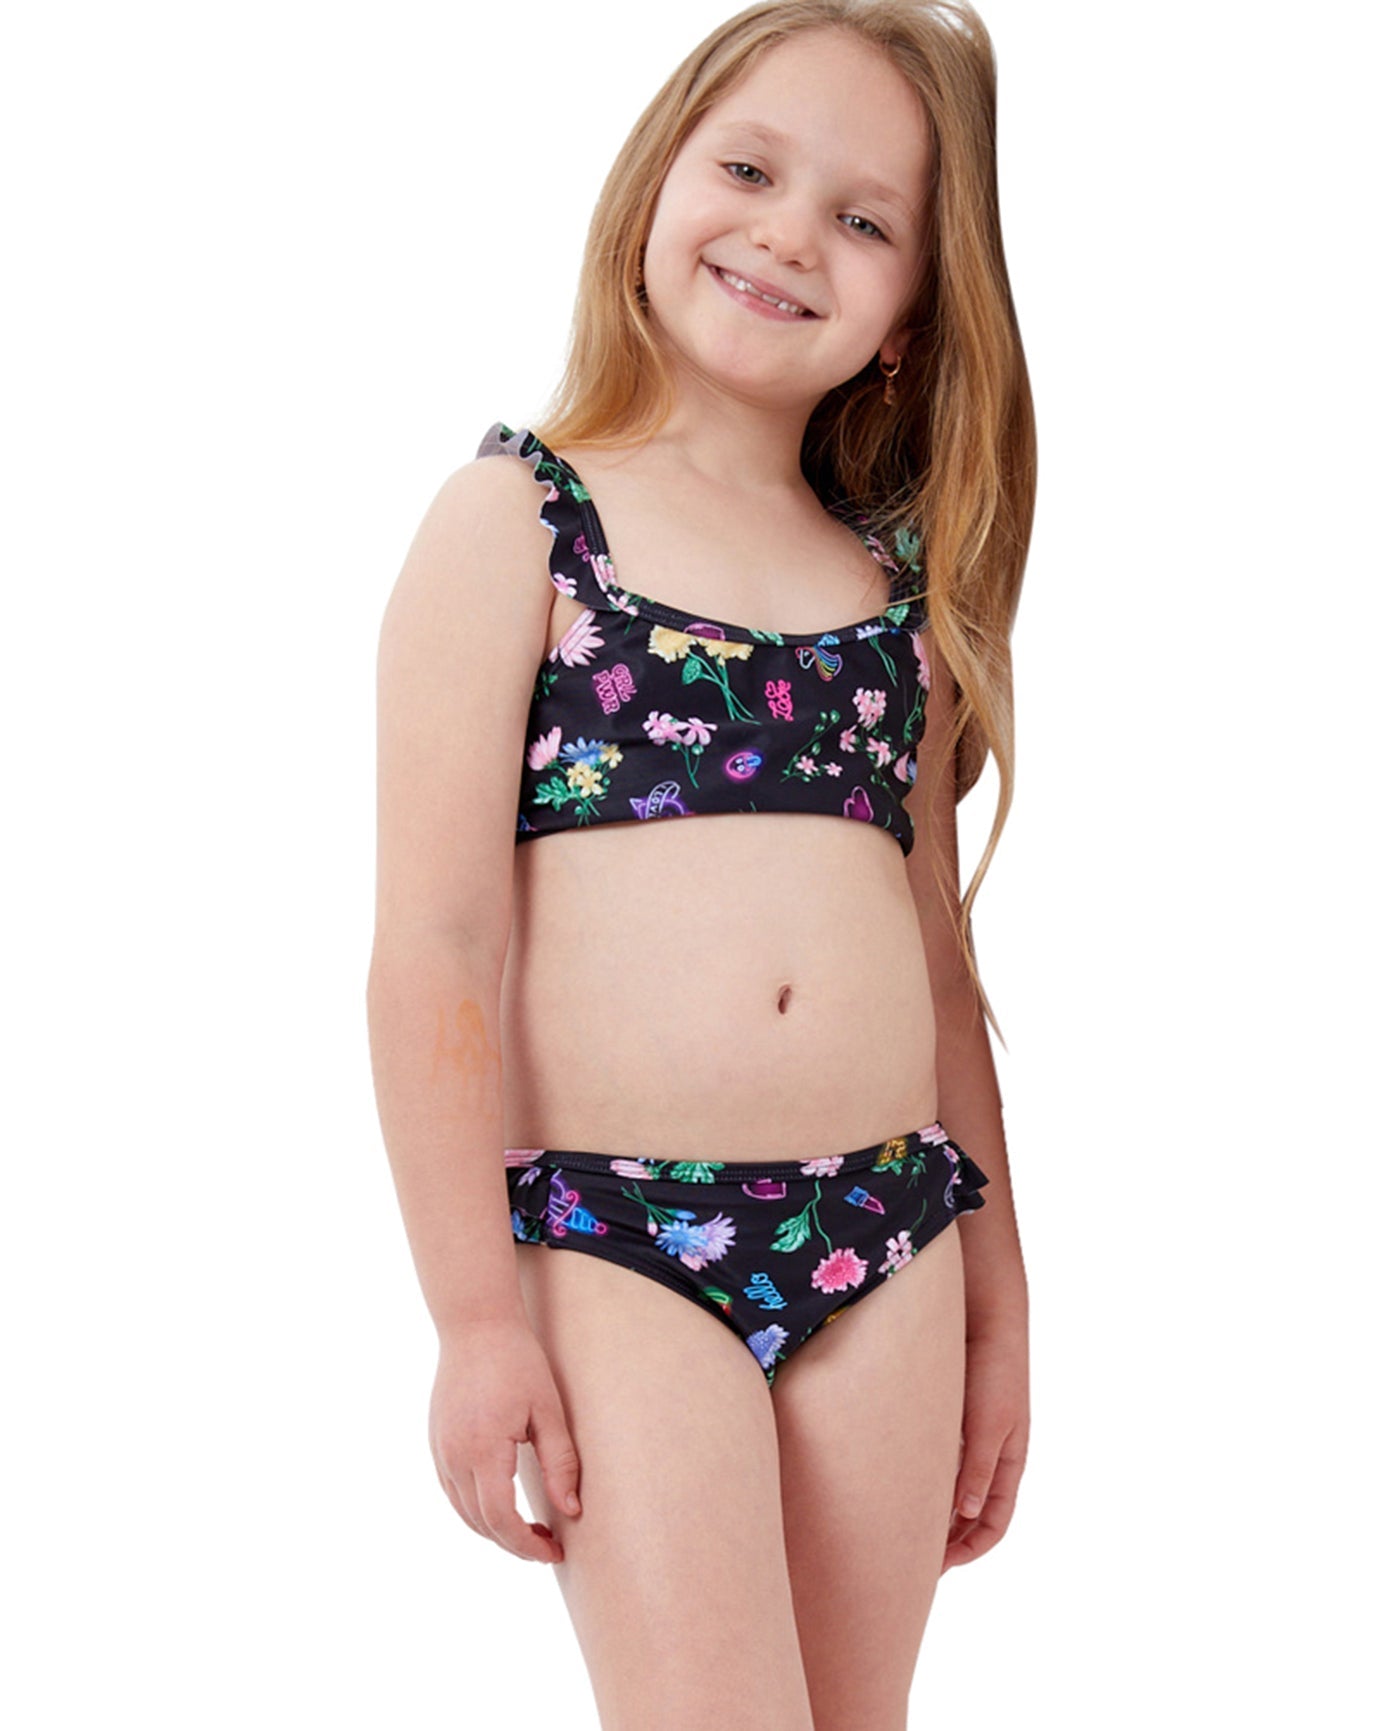 Front View Of Gottex Kids Daisies Ruffle Bralette Bikini Top with Matching Bikini Bottom | GTK DAISIES